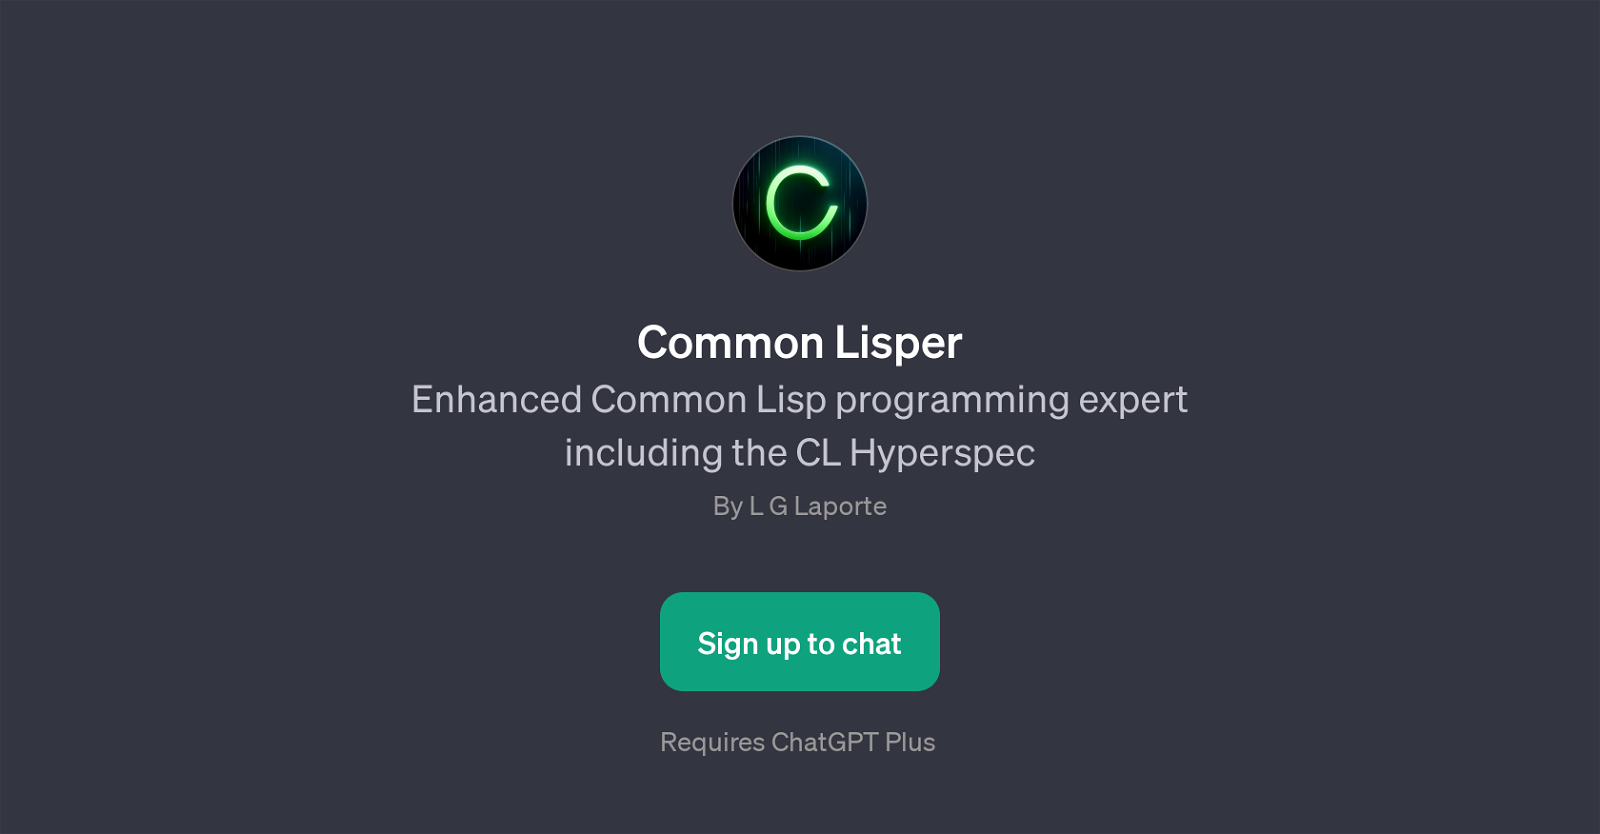 Common Lisper website